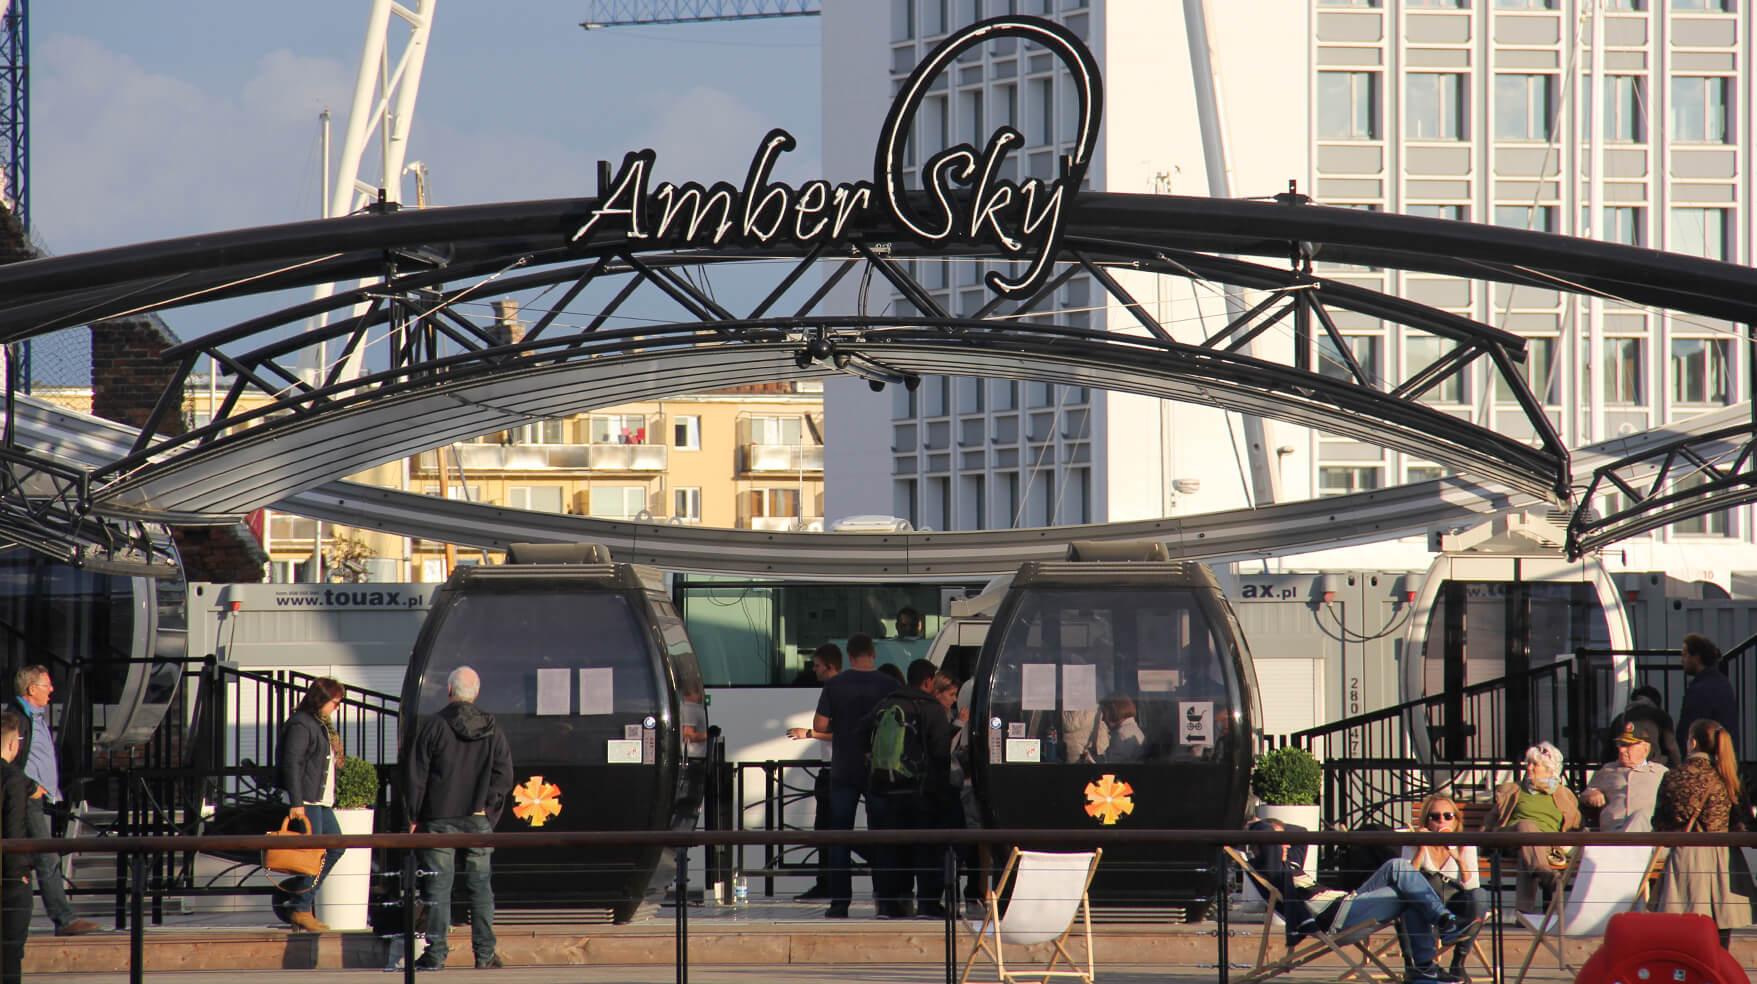 Cielo ámbar - Amber Sky - cartel de neón blanco con el nombre de la empresa colocado en un marco